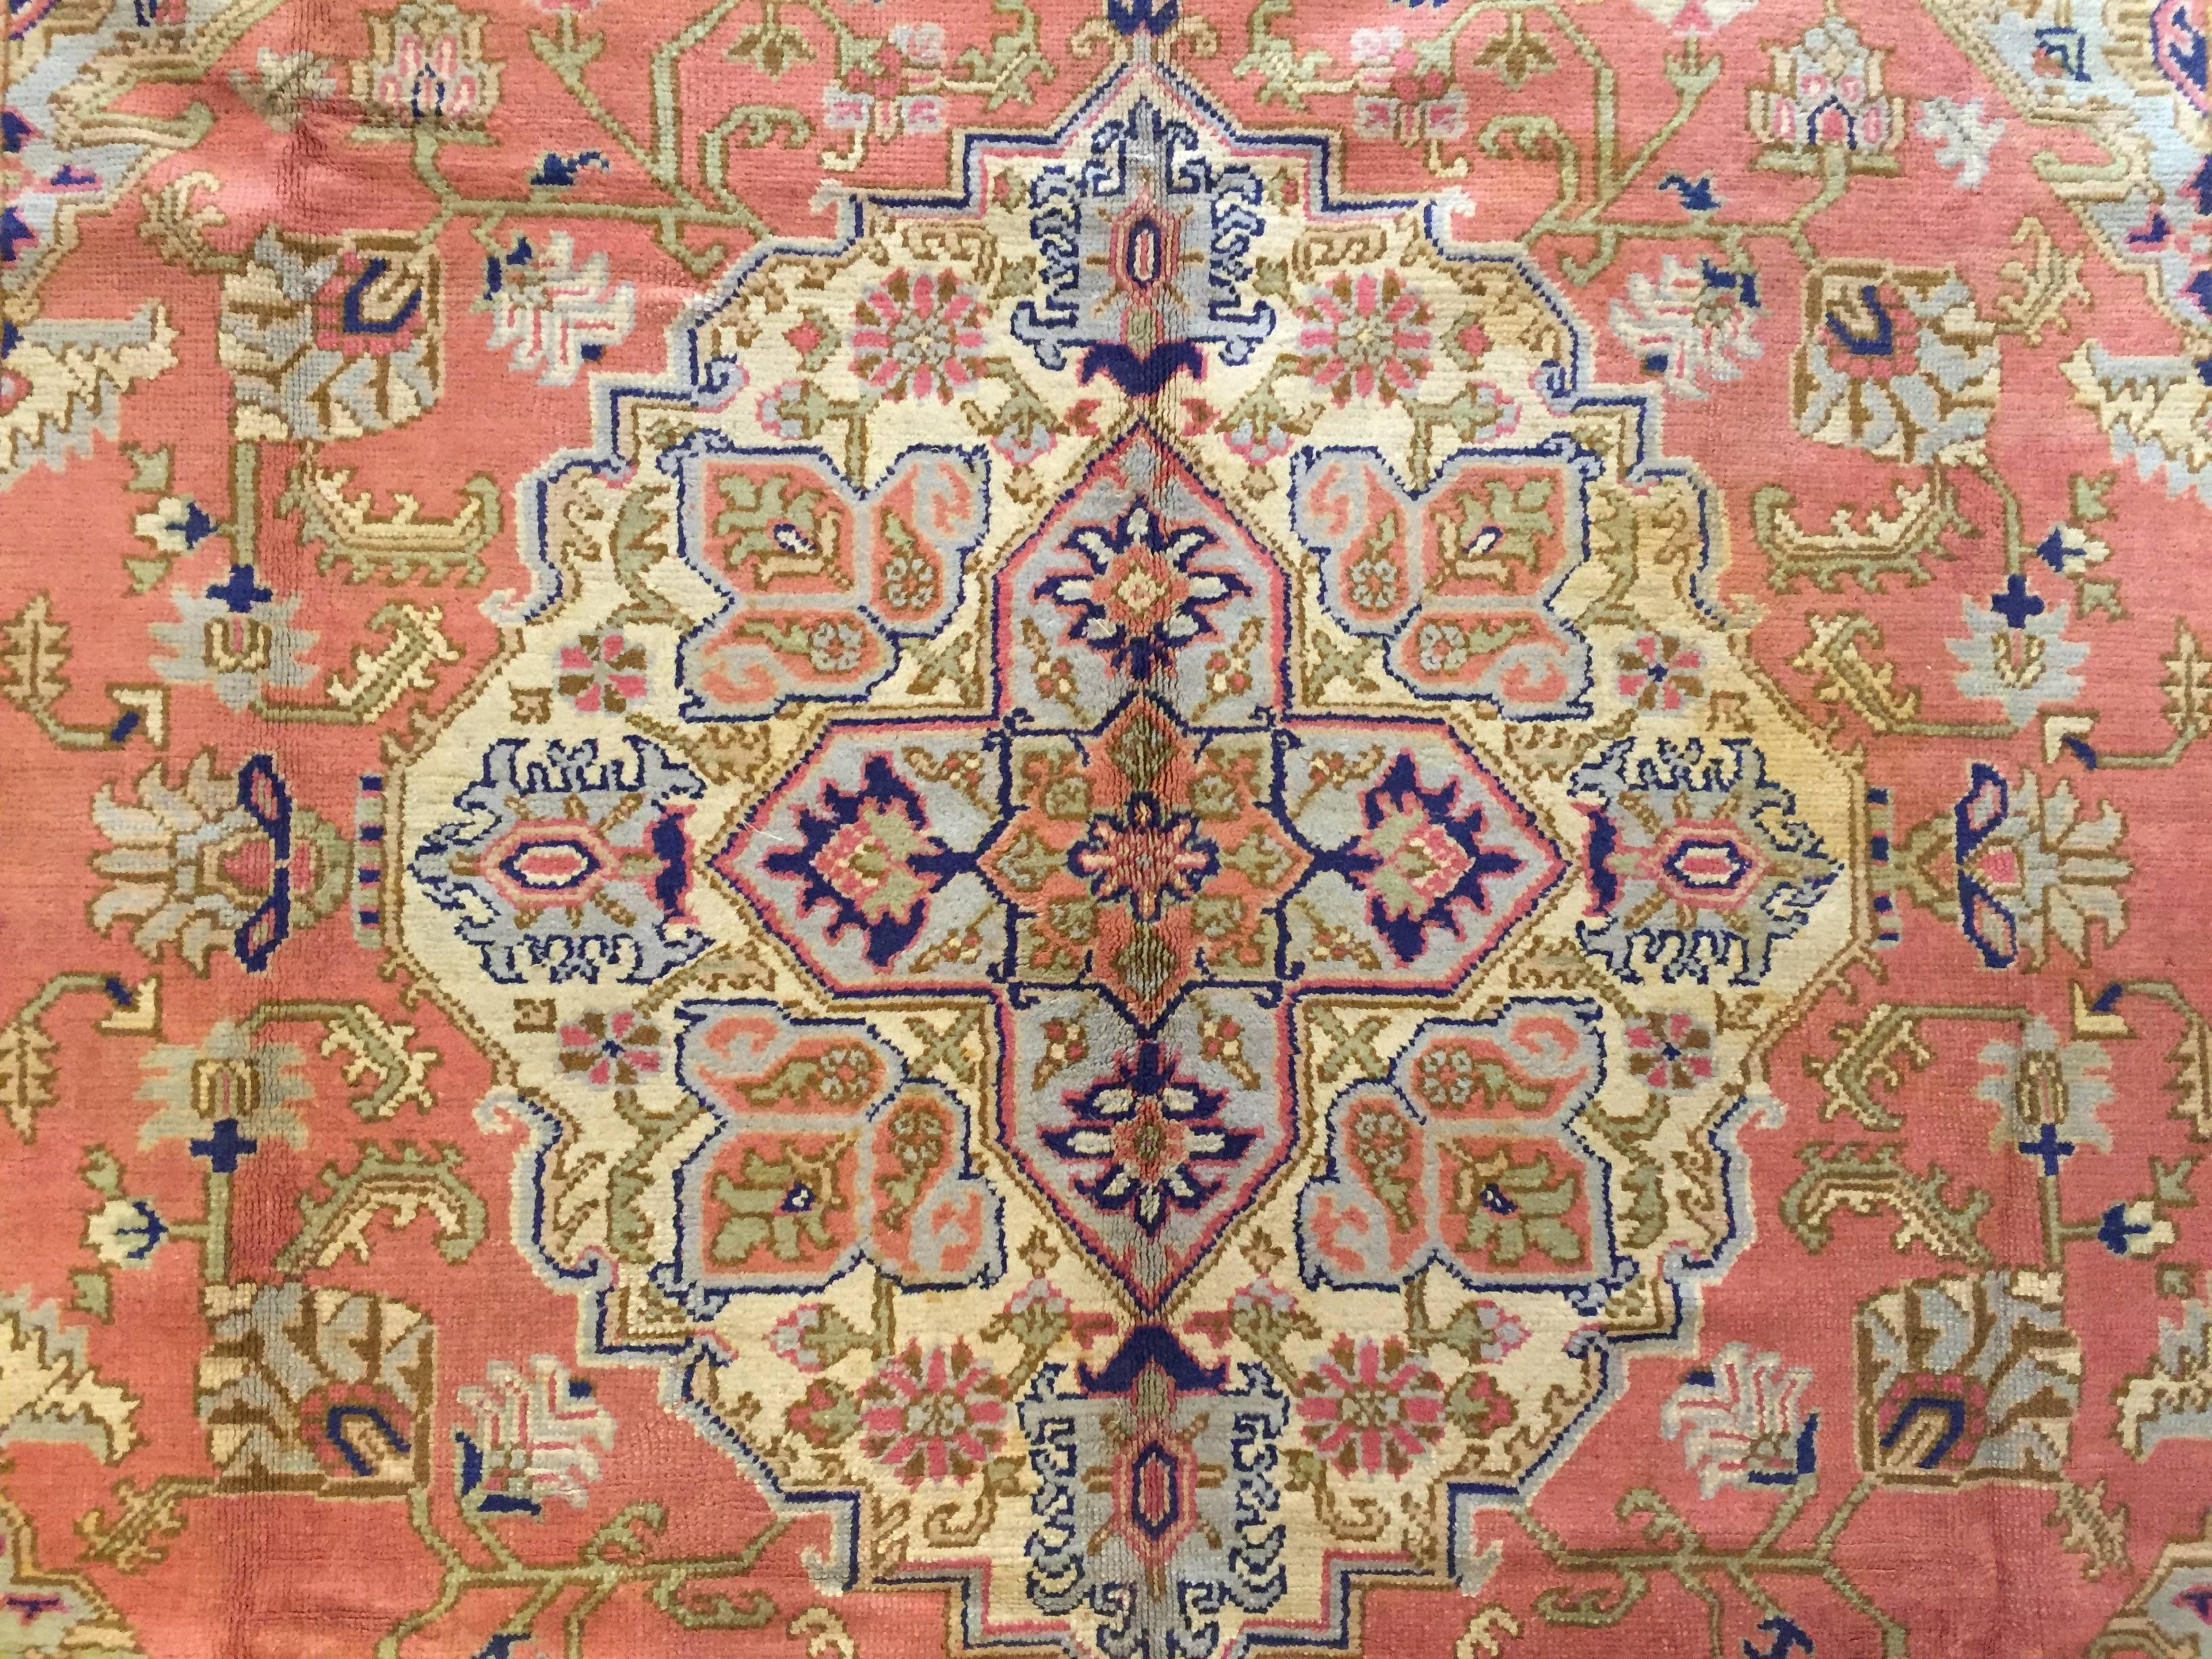 Les tapis d'Oushak proviennent de la petite ville d'Oushak, située dans le centre-ouest de l'Anatolie, juste au sud d'Istanbul. Contrairement à la plupart des tapis turcs, les tapis Oushak ont été fortement influencés par la tradition perse. Presque